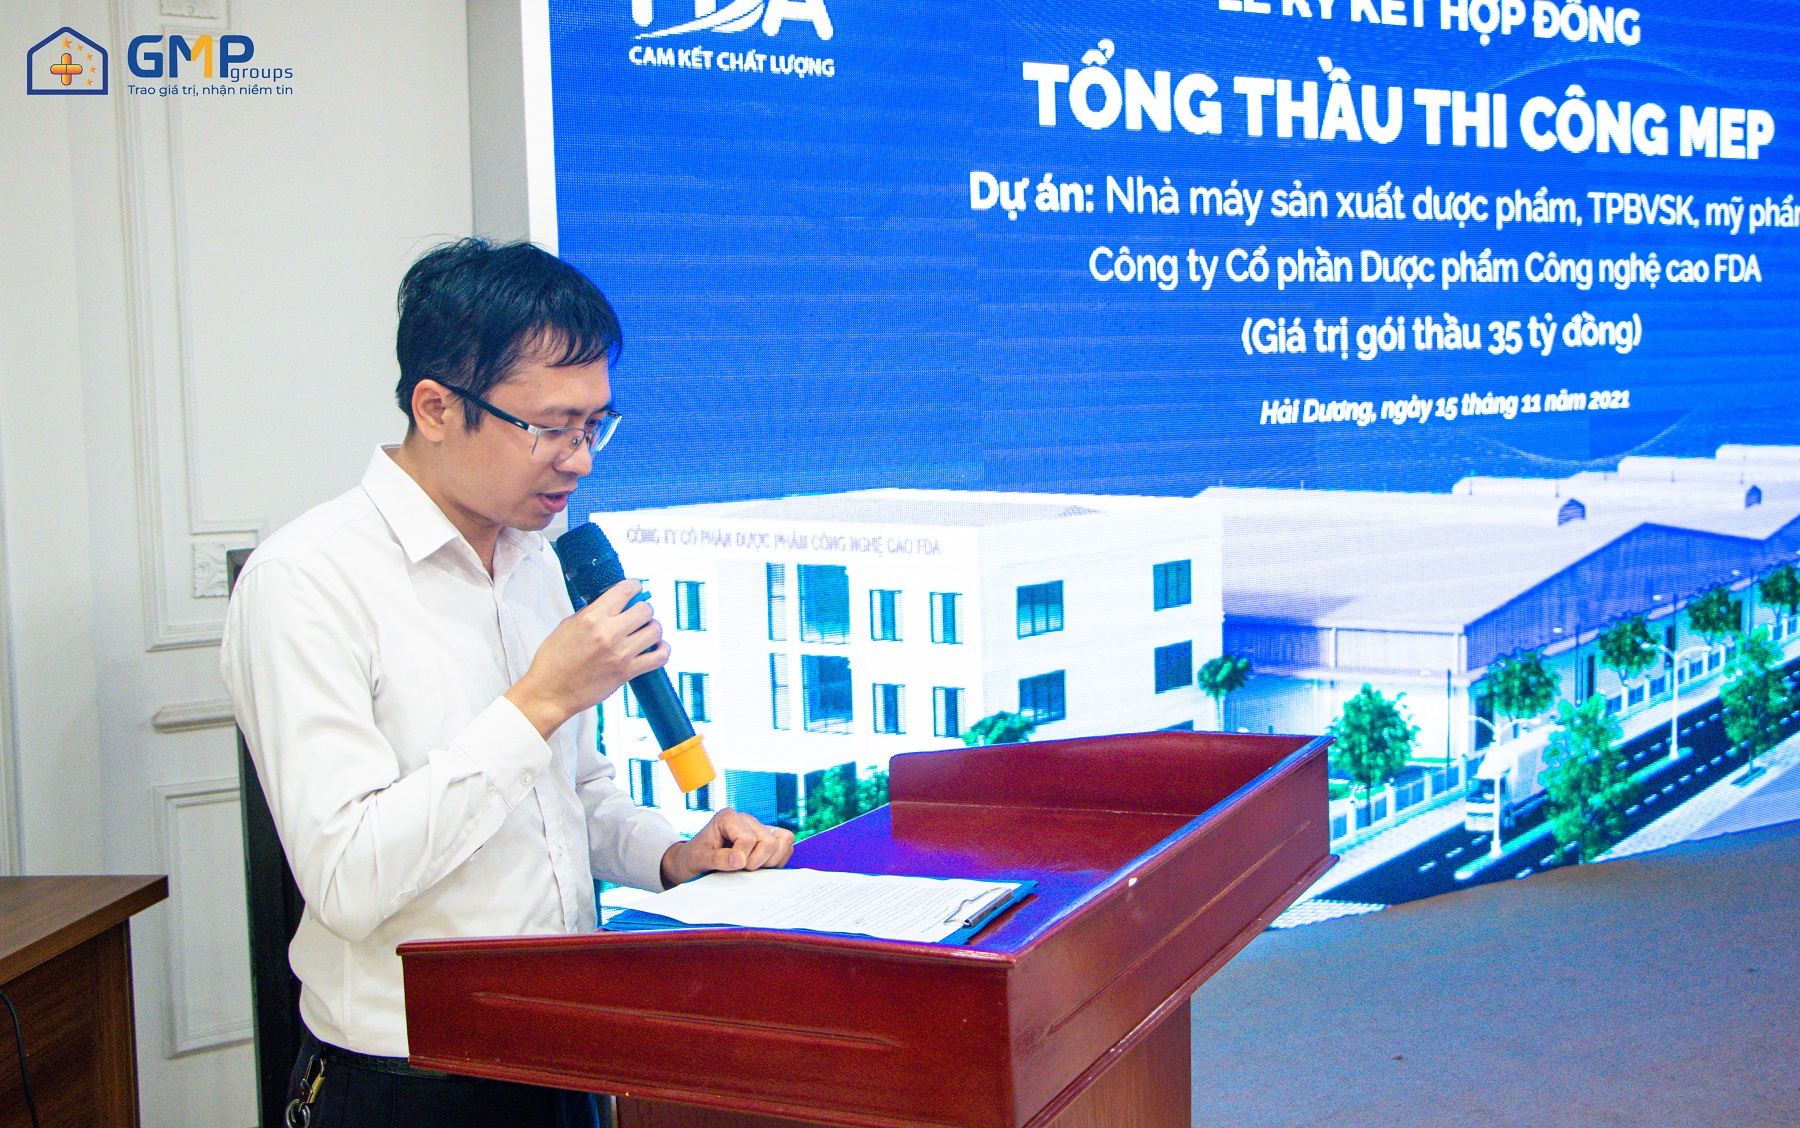 Ông Trịnh Duy Nghiêm - Giám đốc kỹ thuật dự án Công ty CP GMP Groups cam kết về chất lượng, tiến độ, an toàn trong việc triển khai thi công dự án nhà máy FDA